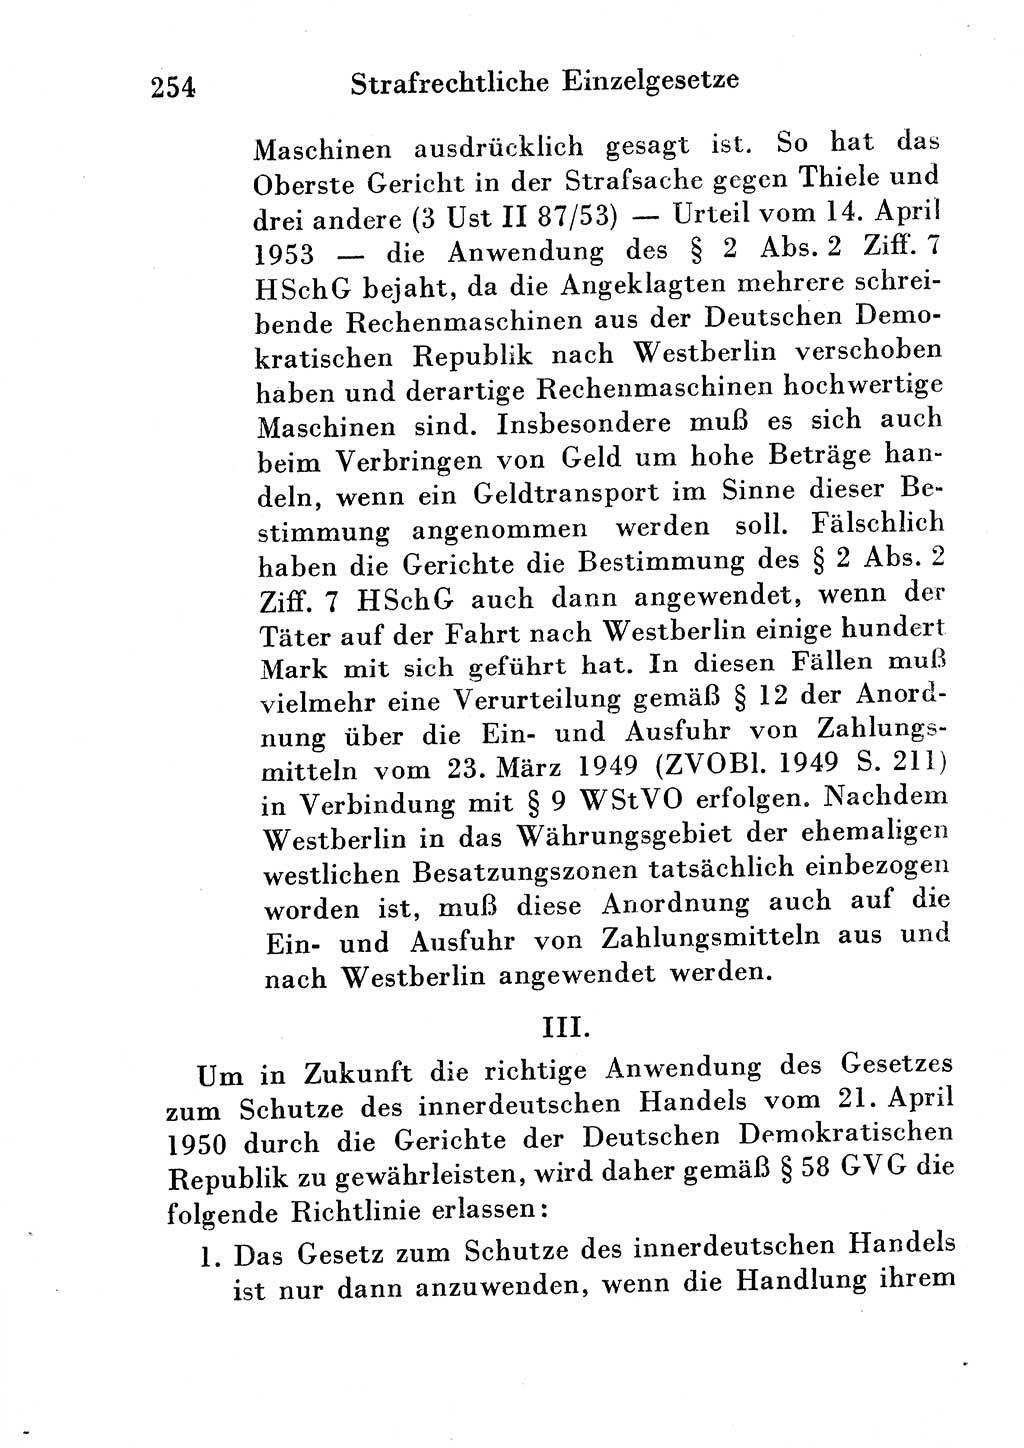 Strafgesetzbuch (StGB) und andere Strafgesetze [Deutsche Demokratische Republik (DDR)] 1954, Seite 254 (StGB Strafges. DDR 1954, S. 254)